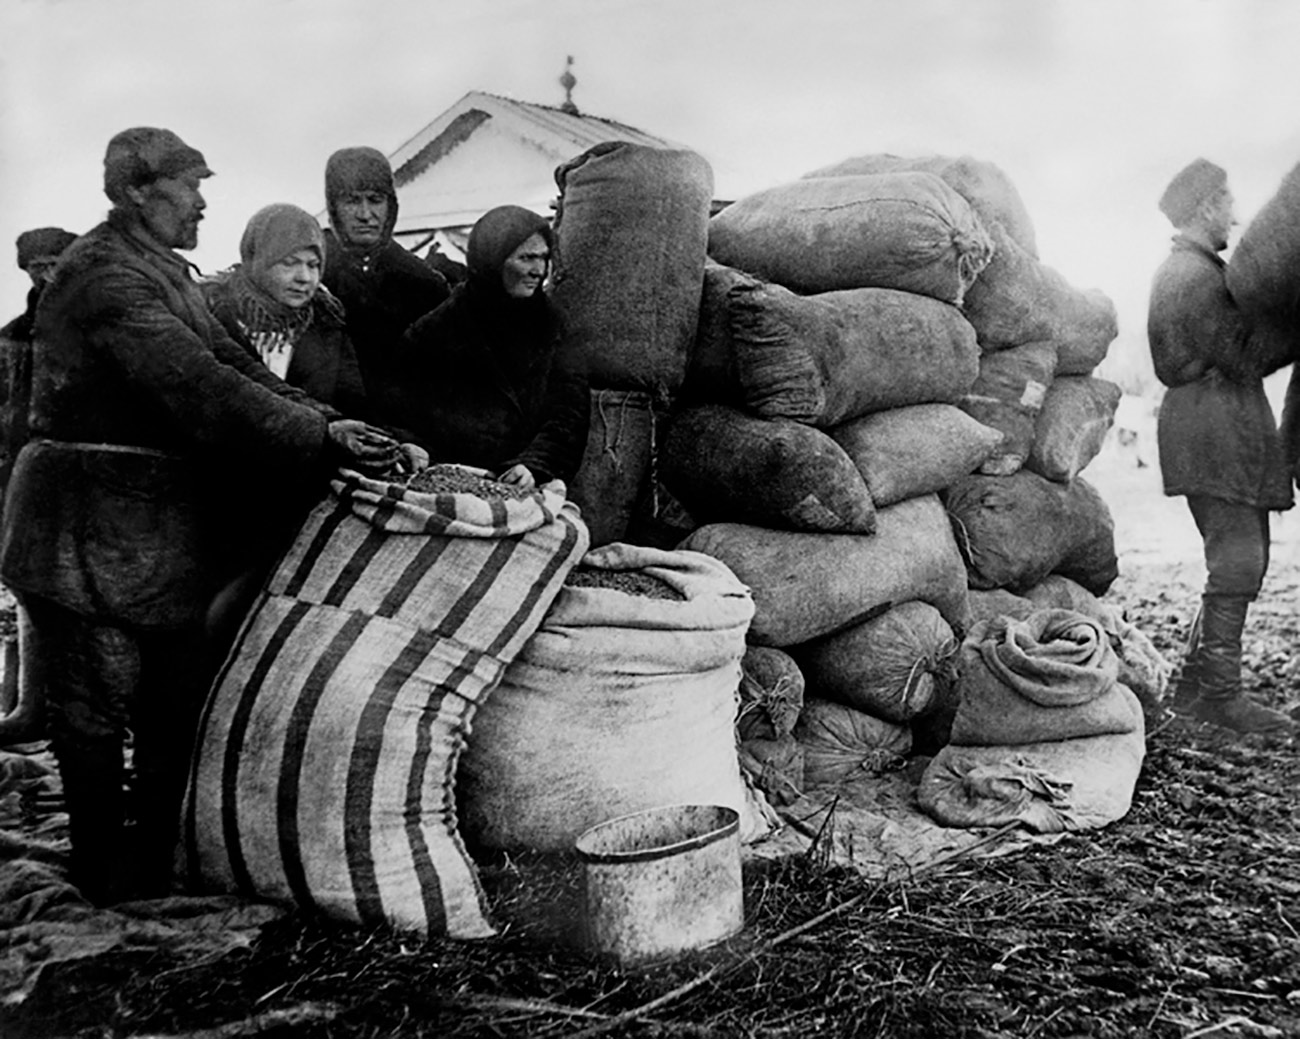 Leta 1929 je postala kolektivizacija proces velikega obsega, ko je Josif Stalin objavil članek z naslovom Leto velikega preobrata. Stalin je potrdil, da sta kolektivizacija in industrializacija glavni sredstvi za modernizacijo države. Istočasno je potrdil potrebo po likvidaciji razreda kmečkih veleposestnikov, ki so postali znani kot kulaki (ruska beseda za pest).